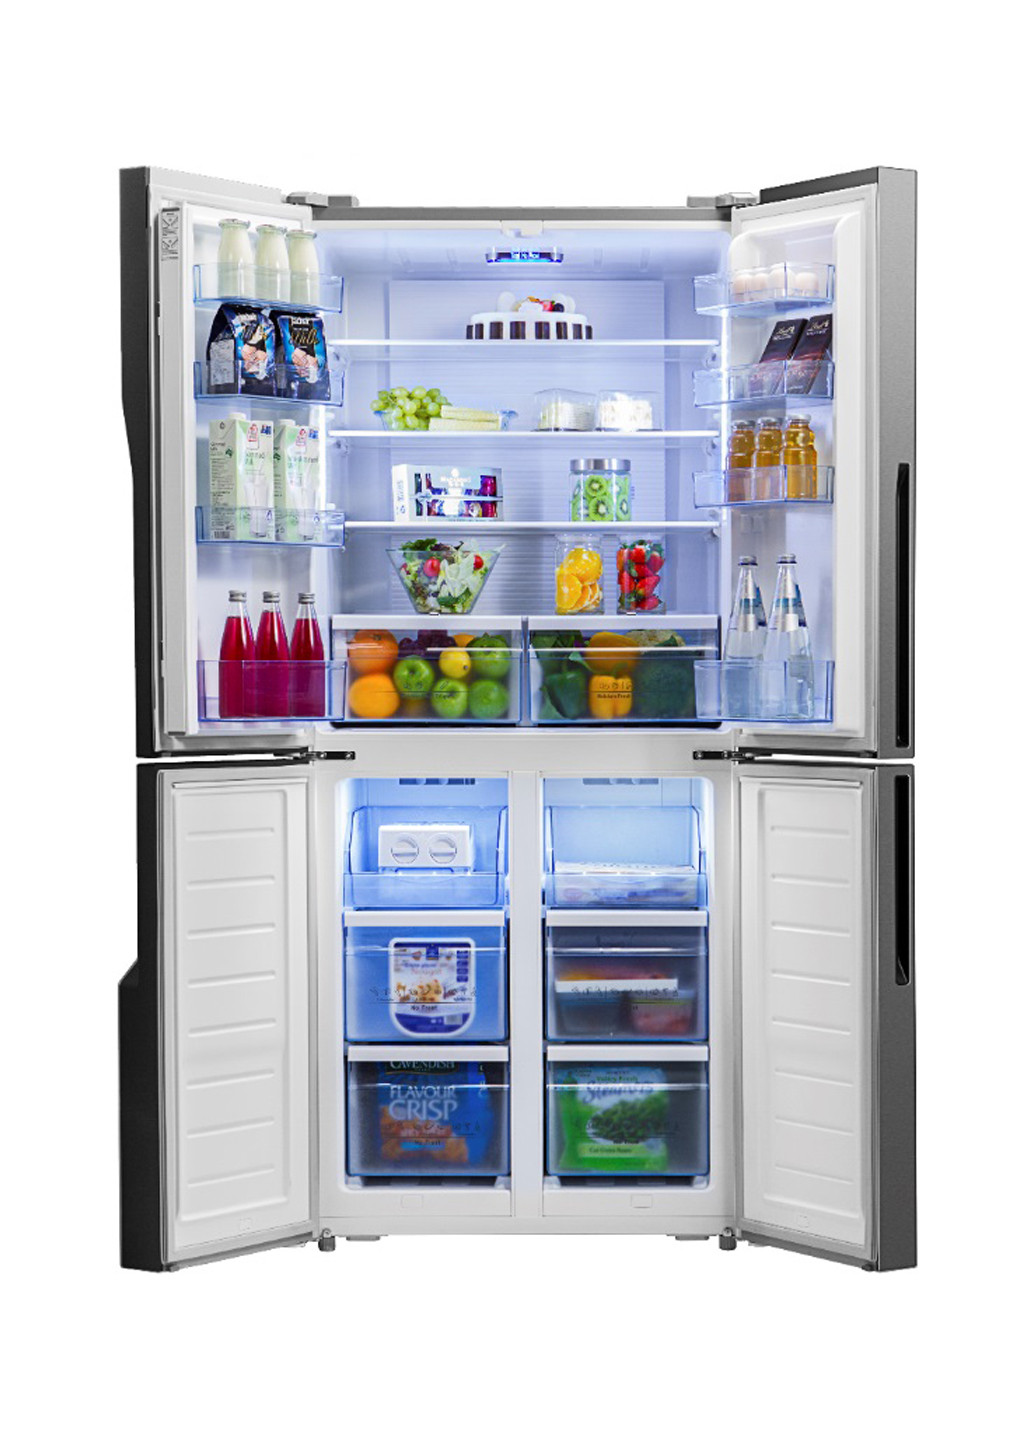 Холодильник RQ-56WC4SHA / CGA1 Hisense rq-56wc4sha/cga1 (131079642)